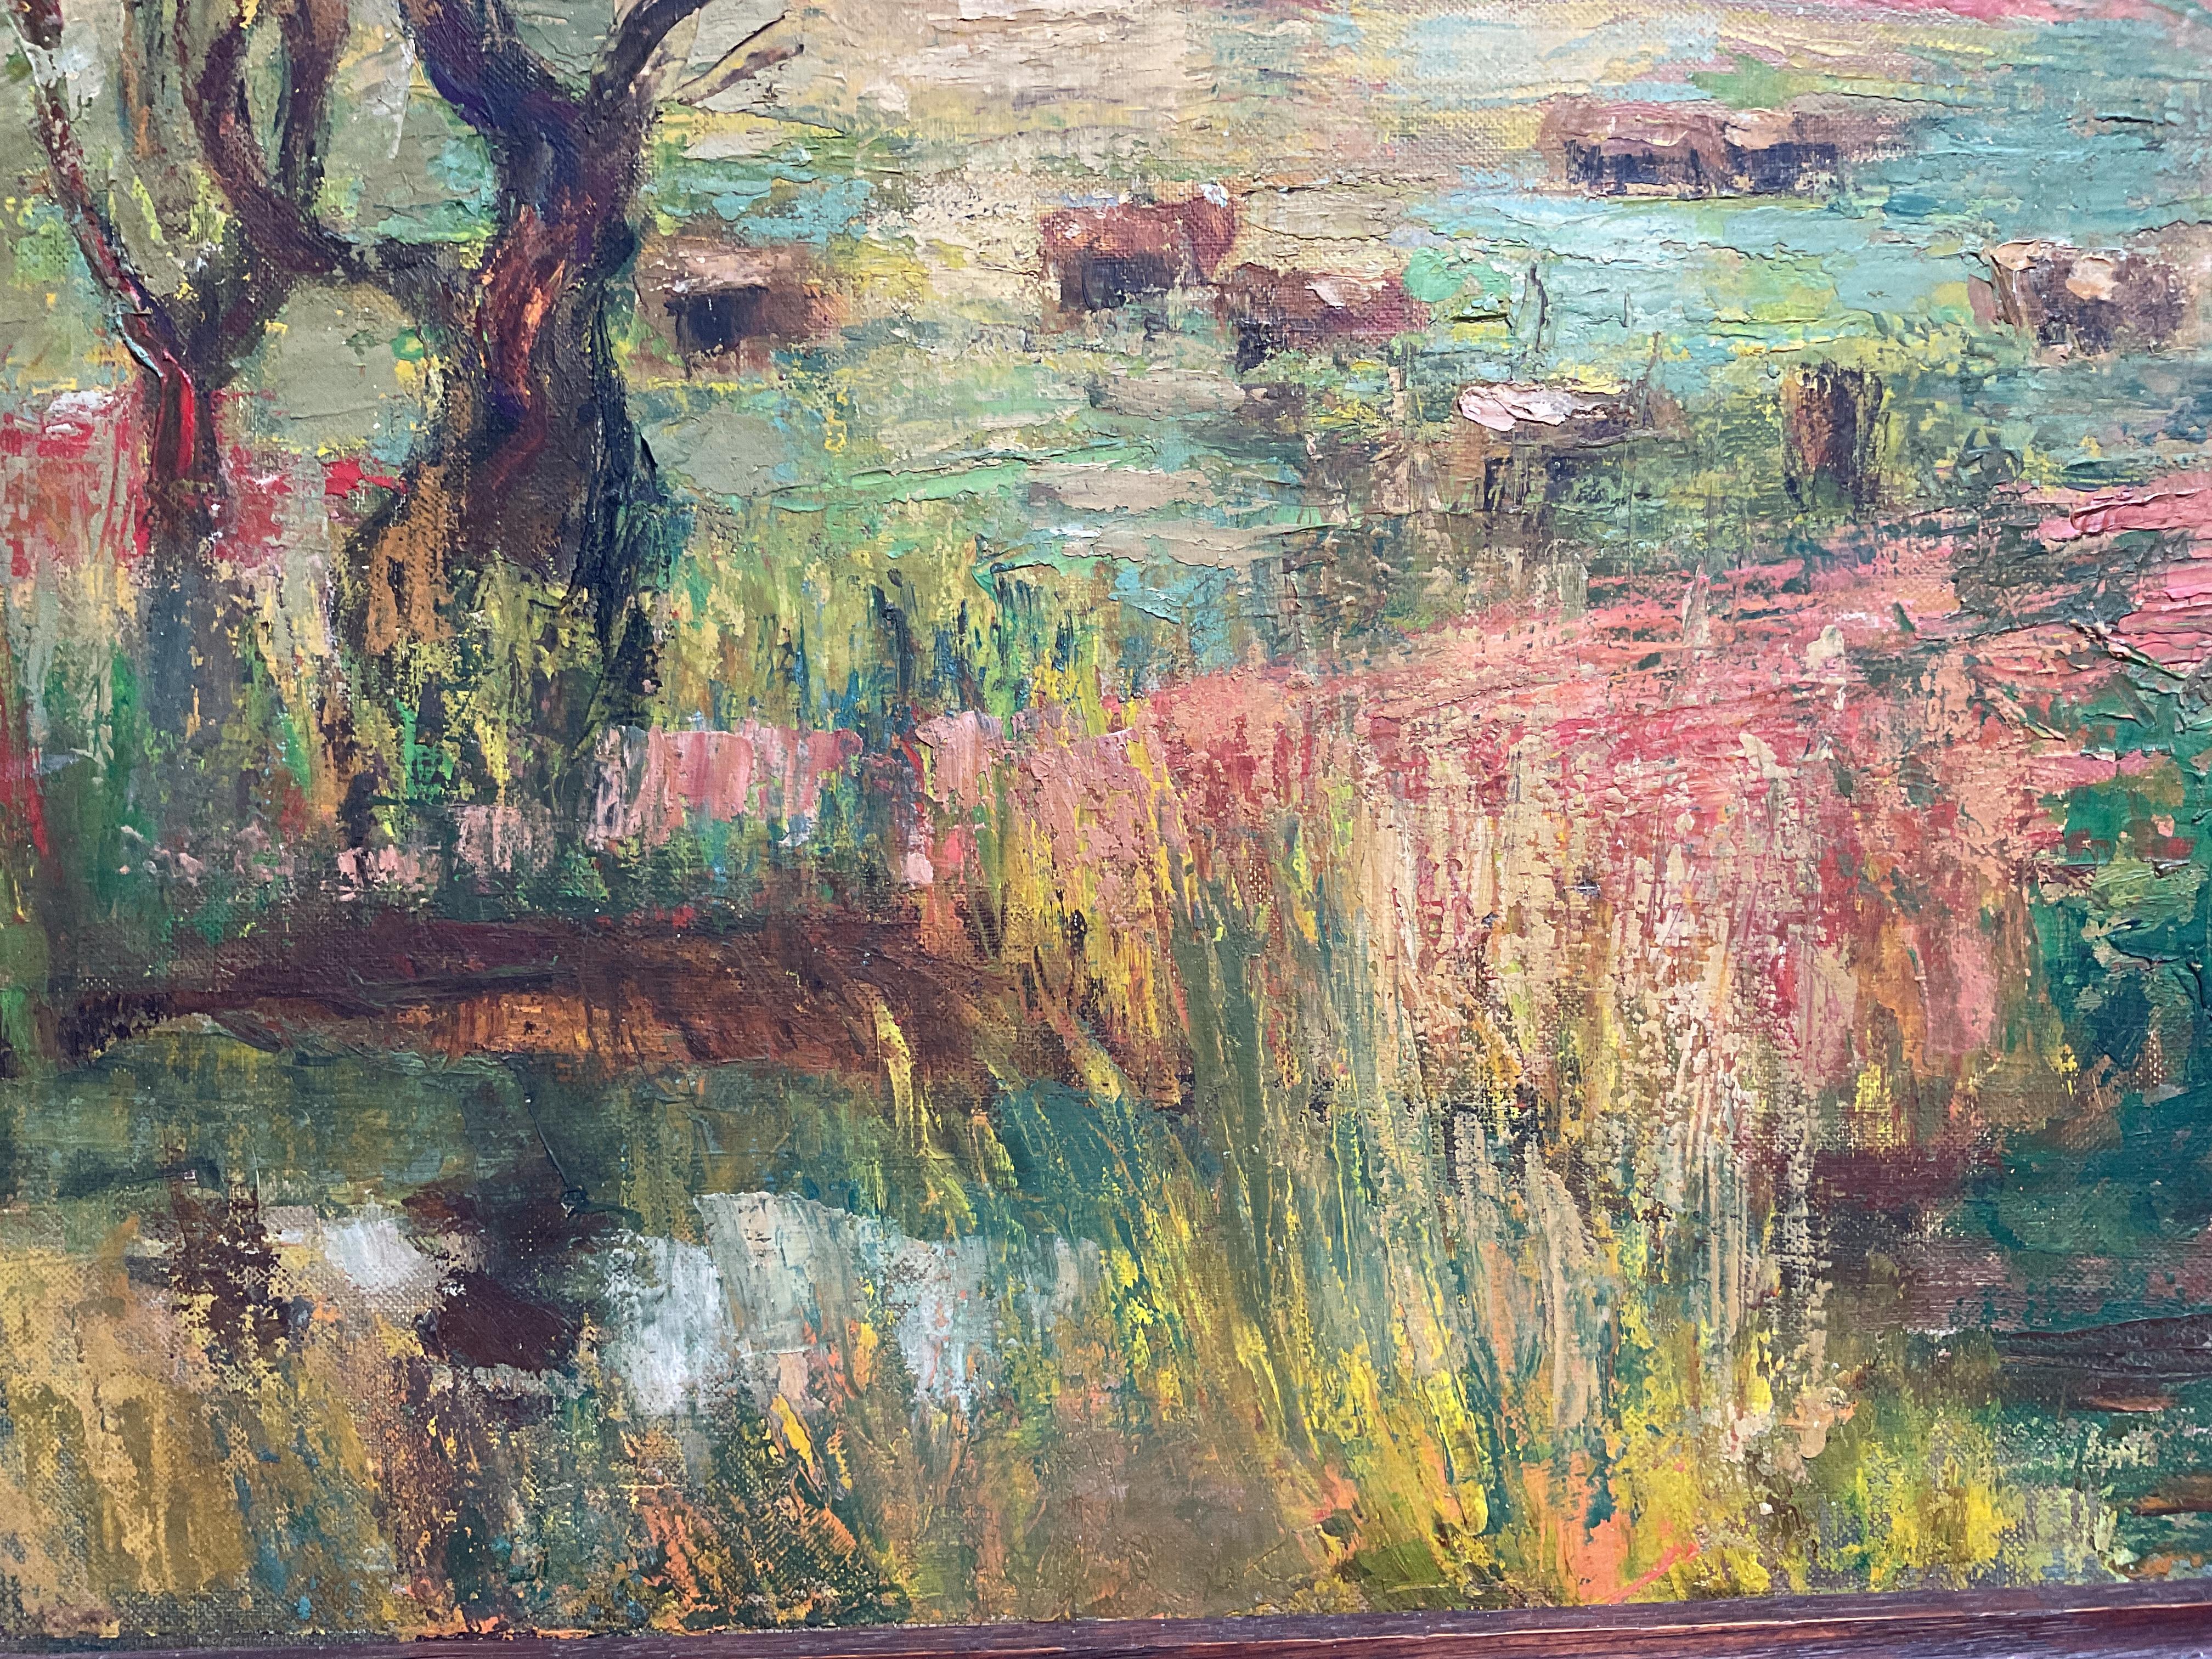 farm landscape painting